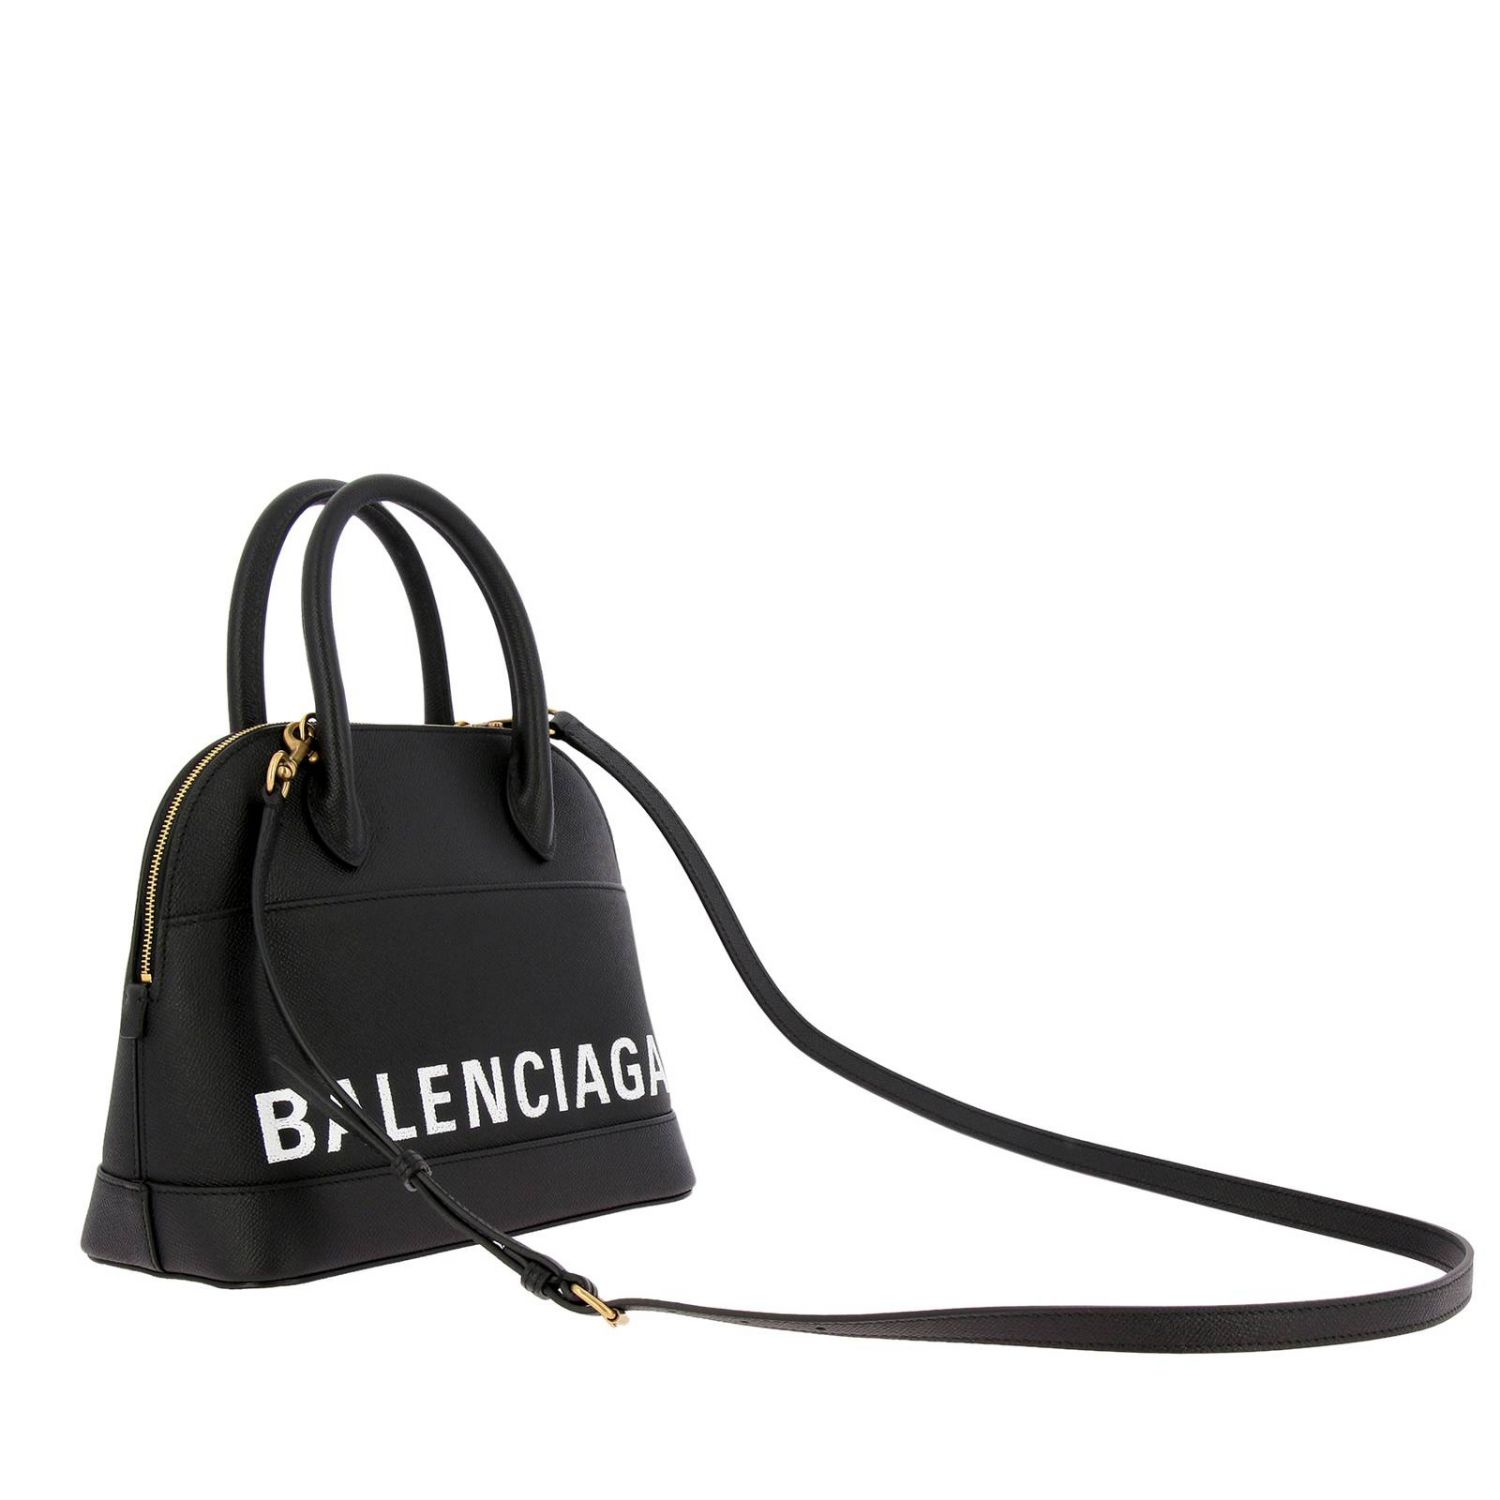 Handbag Balenciaga Women | Handbag Women Balenciaga 550645 0OTDM Giglio EN